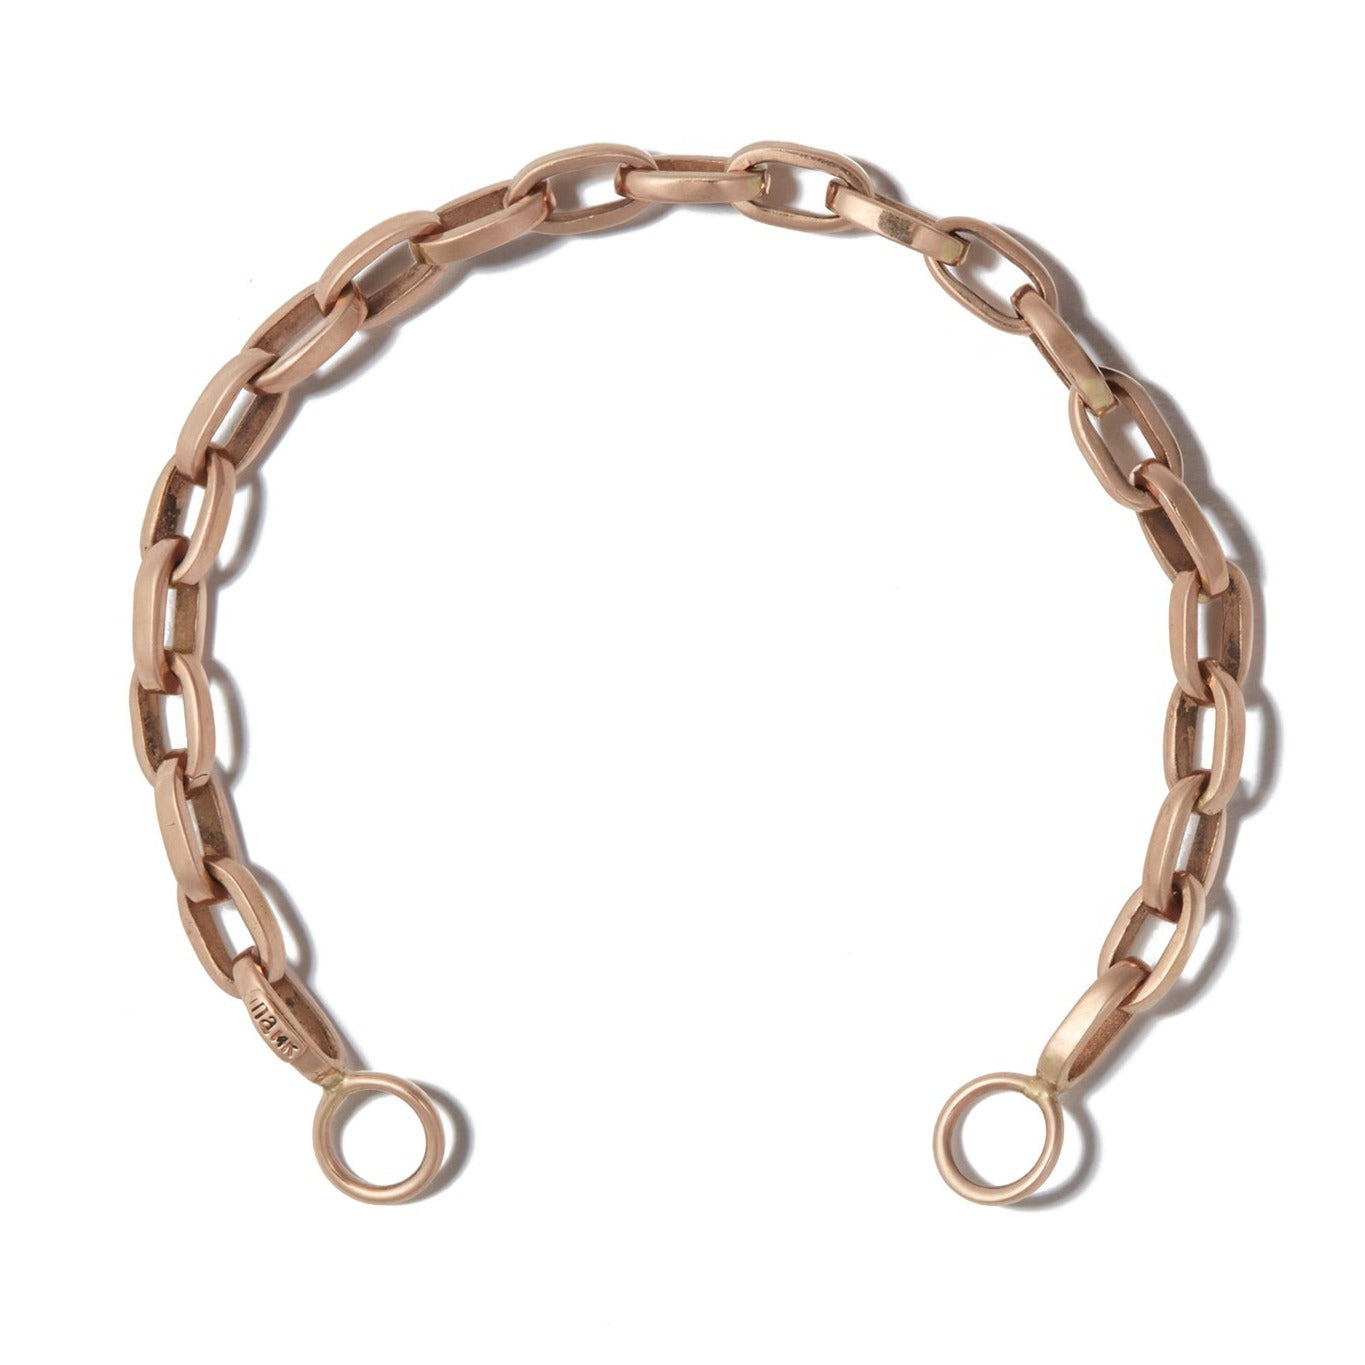 Handmade Biker Chain Bracelet in Gold